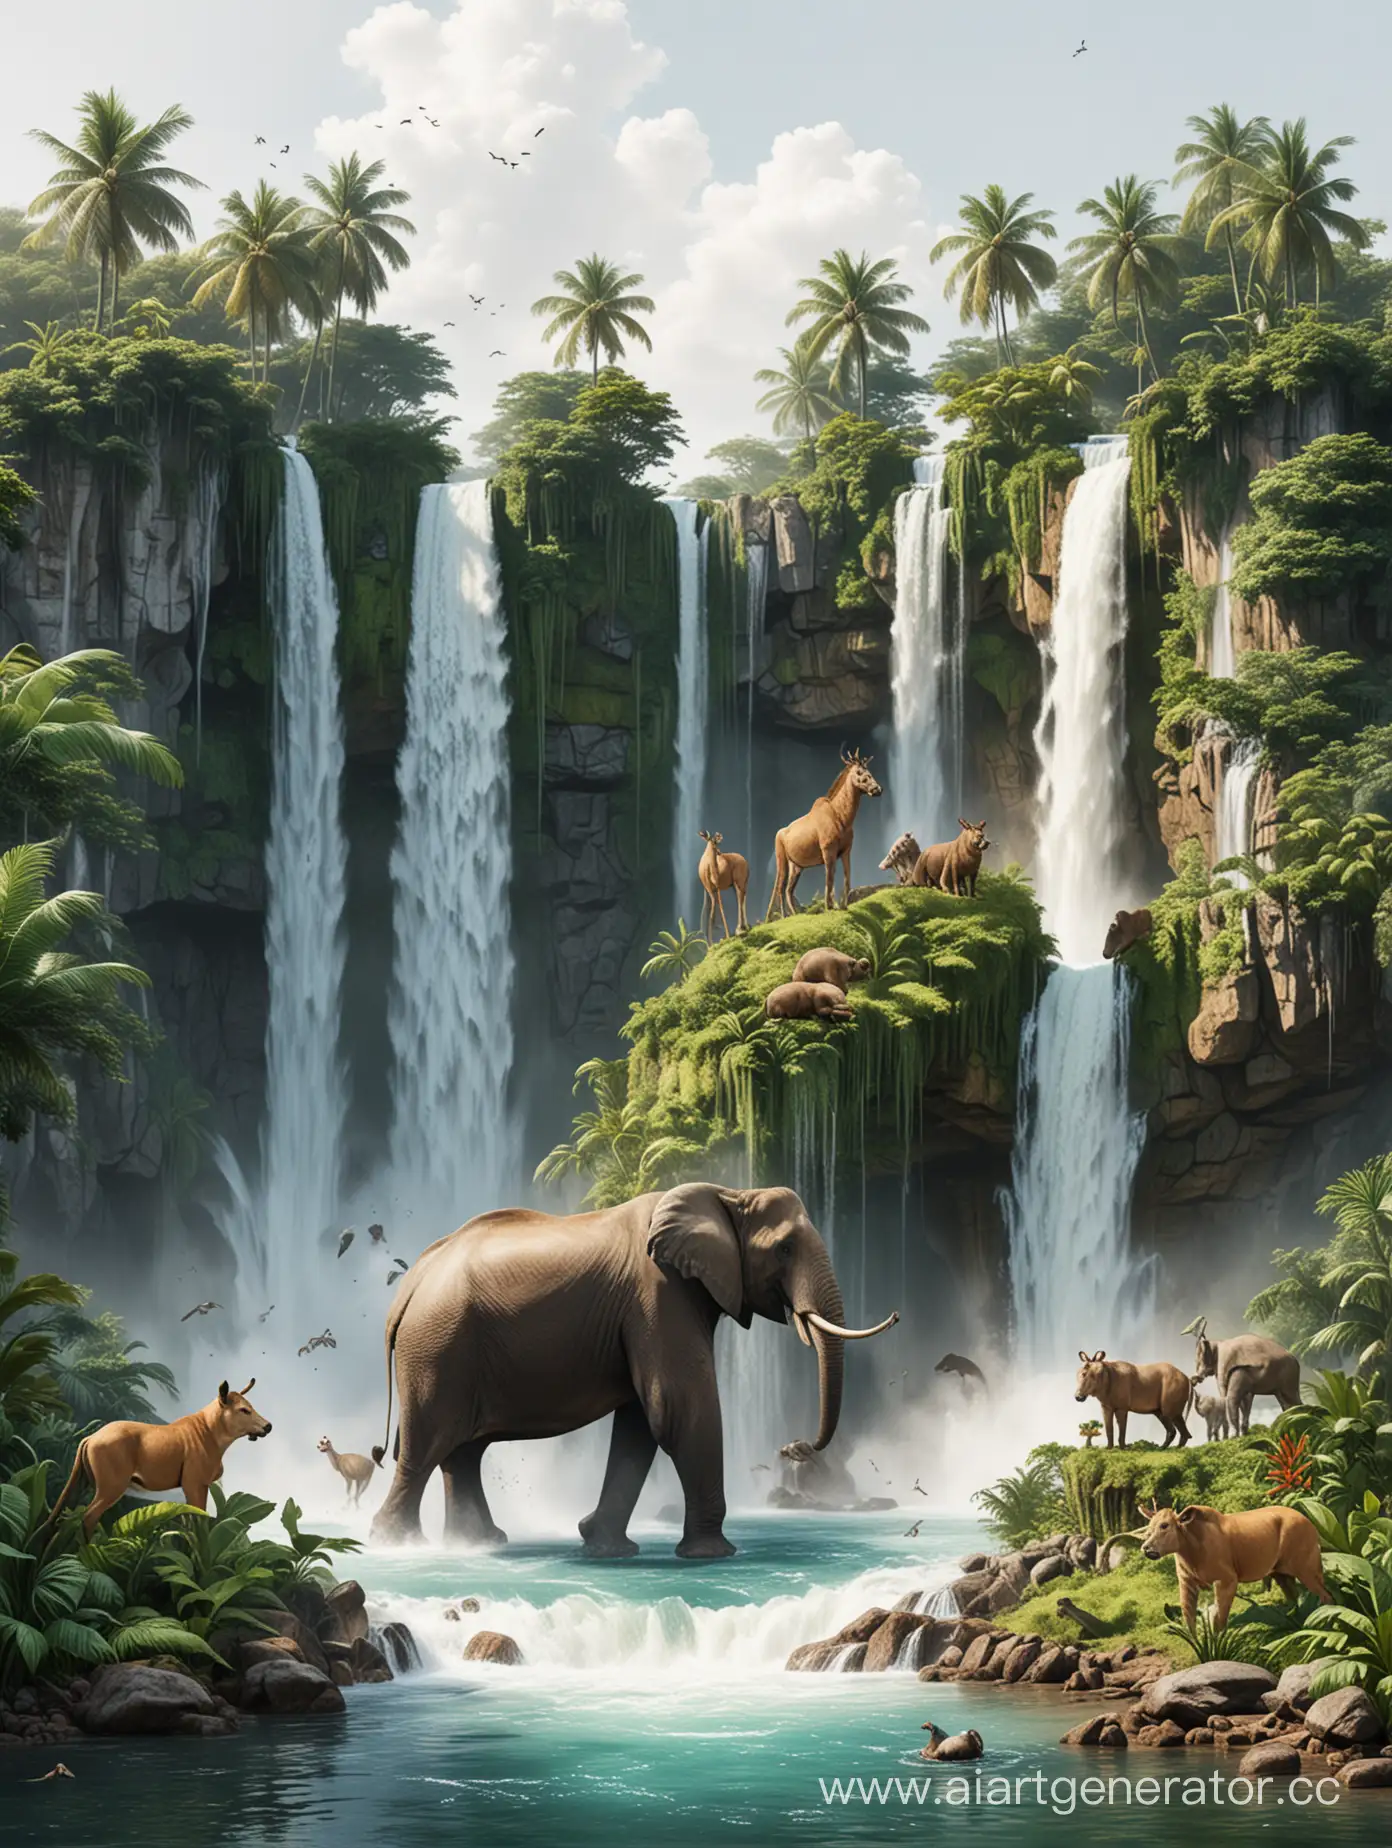 Животные большие (3-5 животных) на квадратном островке джунглей , вокруг белый фон. Яркая реалистичная картинка. Вниз с островка бежит водопад. Островок  видно полностью